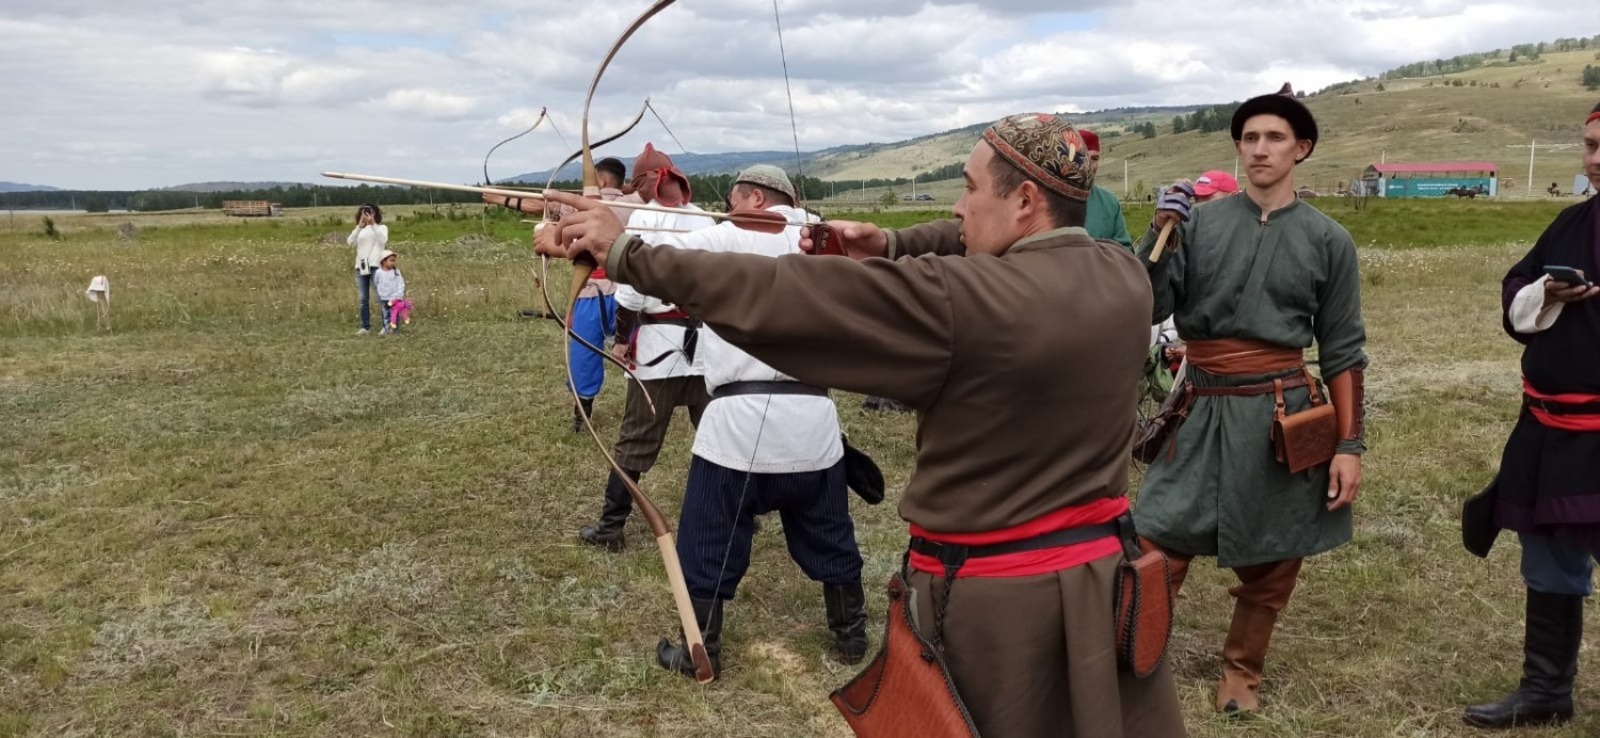 В Башкирию на фестиваль «Башкорт аты» приехали 90 лучников со всей России, чтобы определить сильнейших